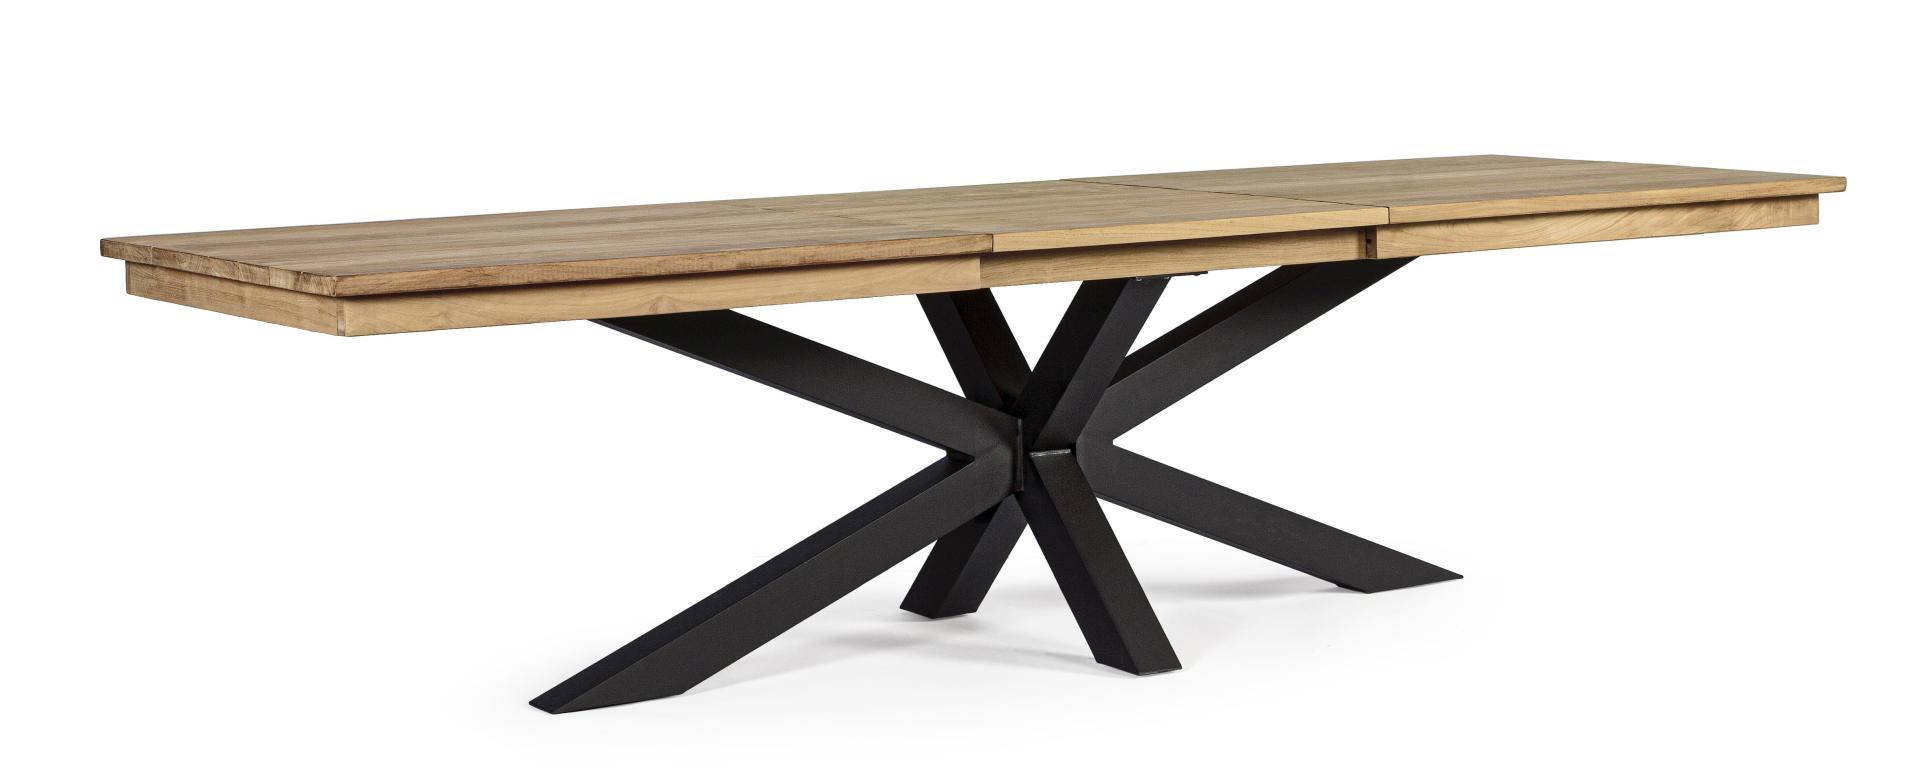 Outdoor Tisch ausziehbar - 300 cm Länge